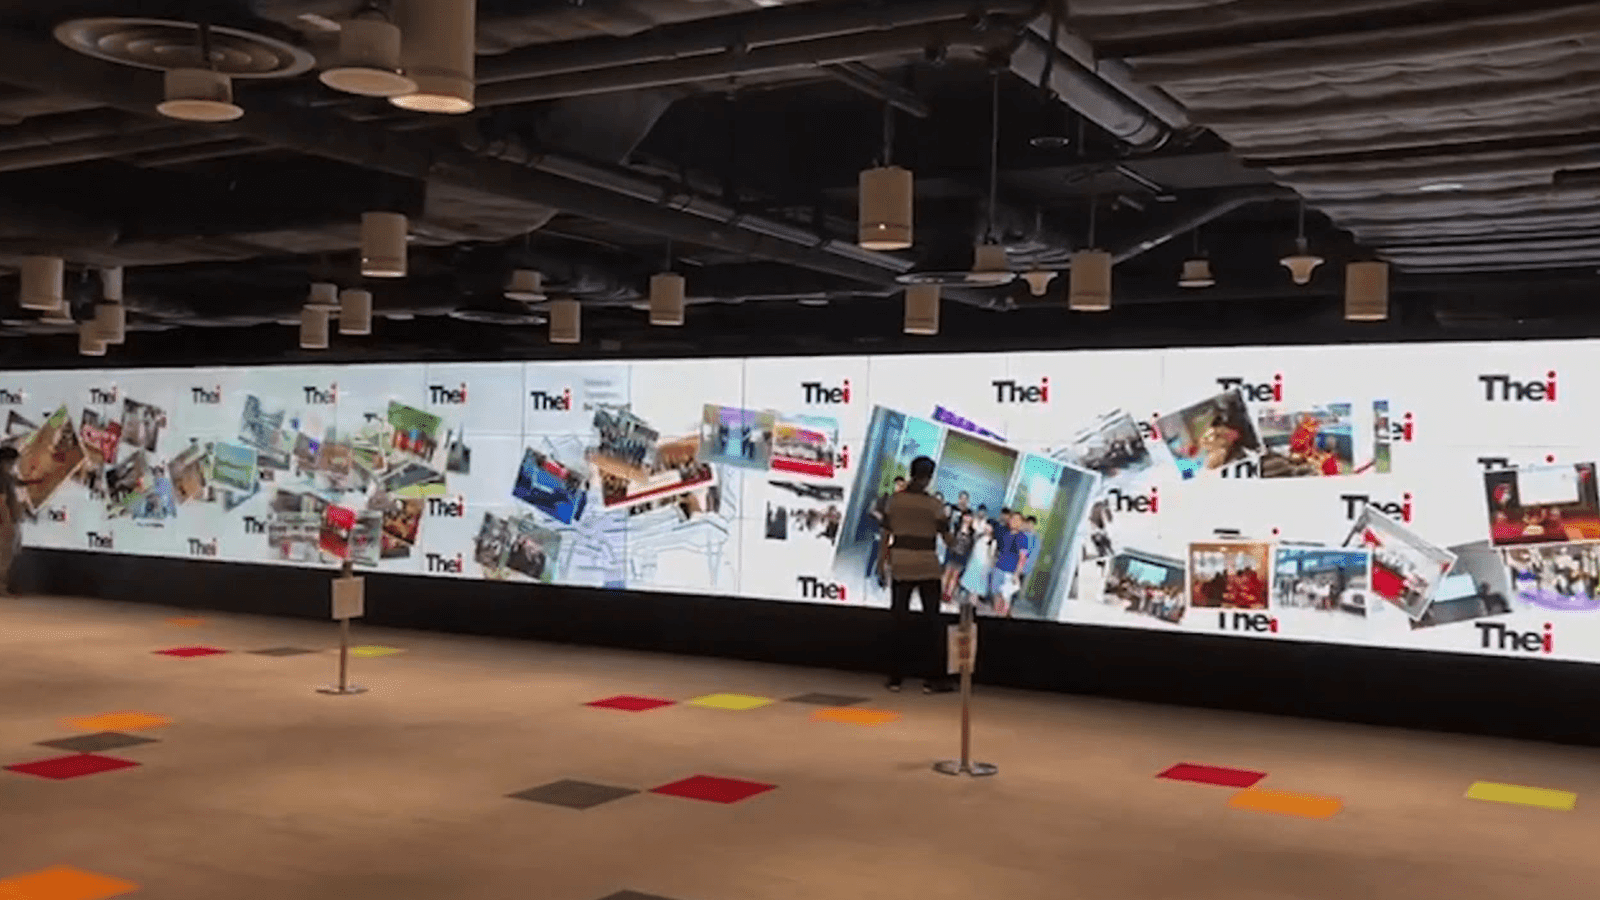 SKIN ULTRA massive interactive wall in Hong Kong 